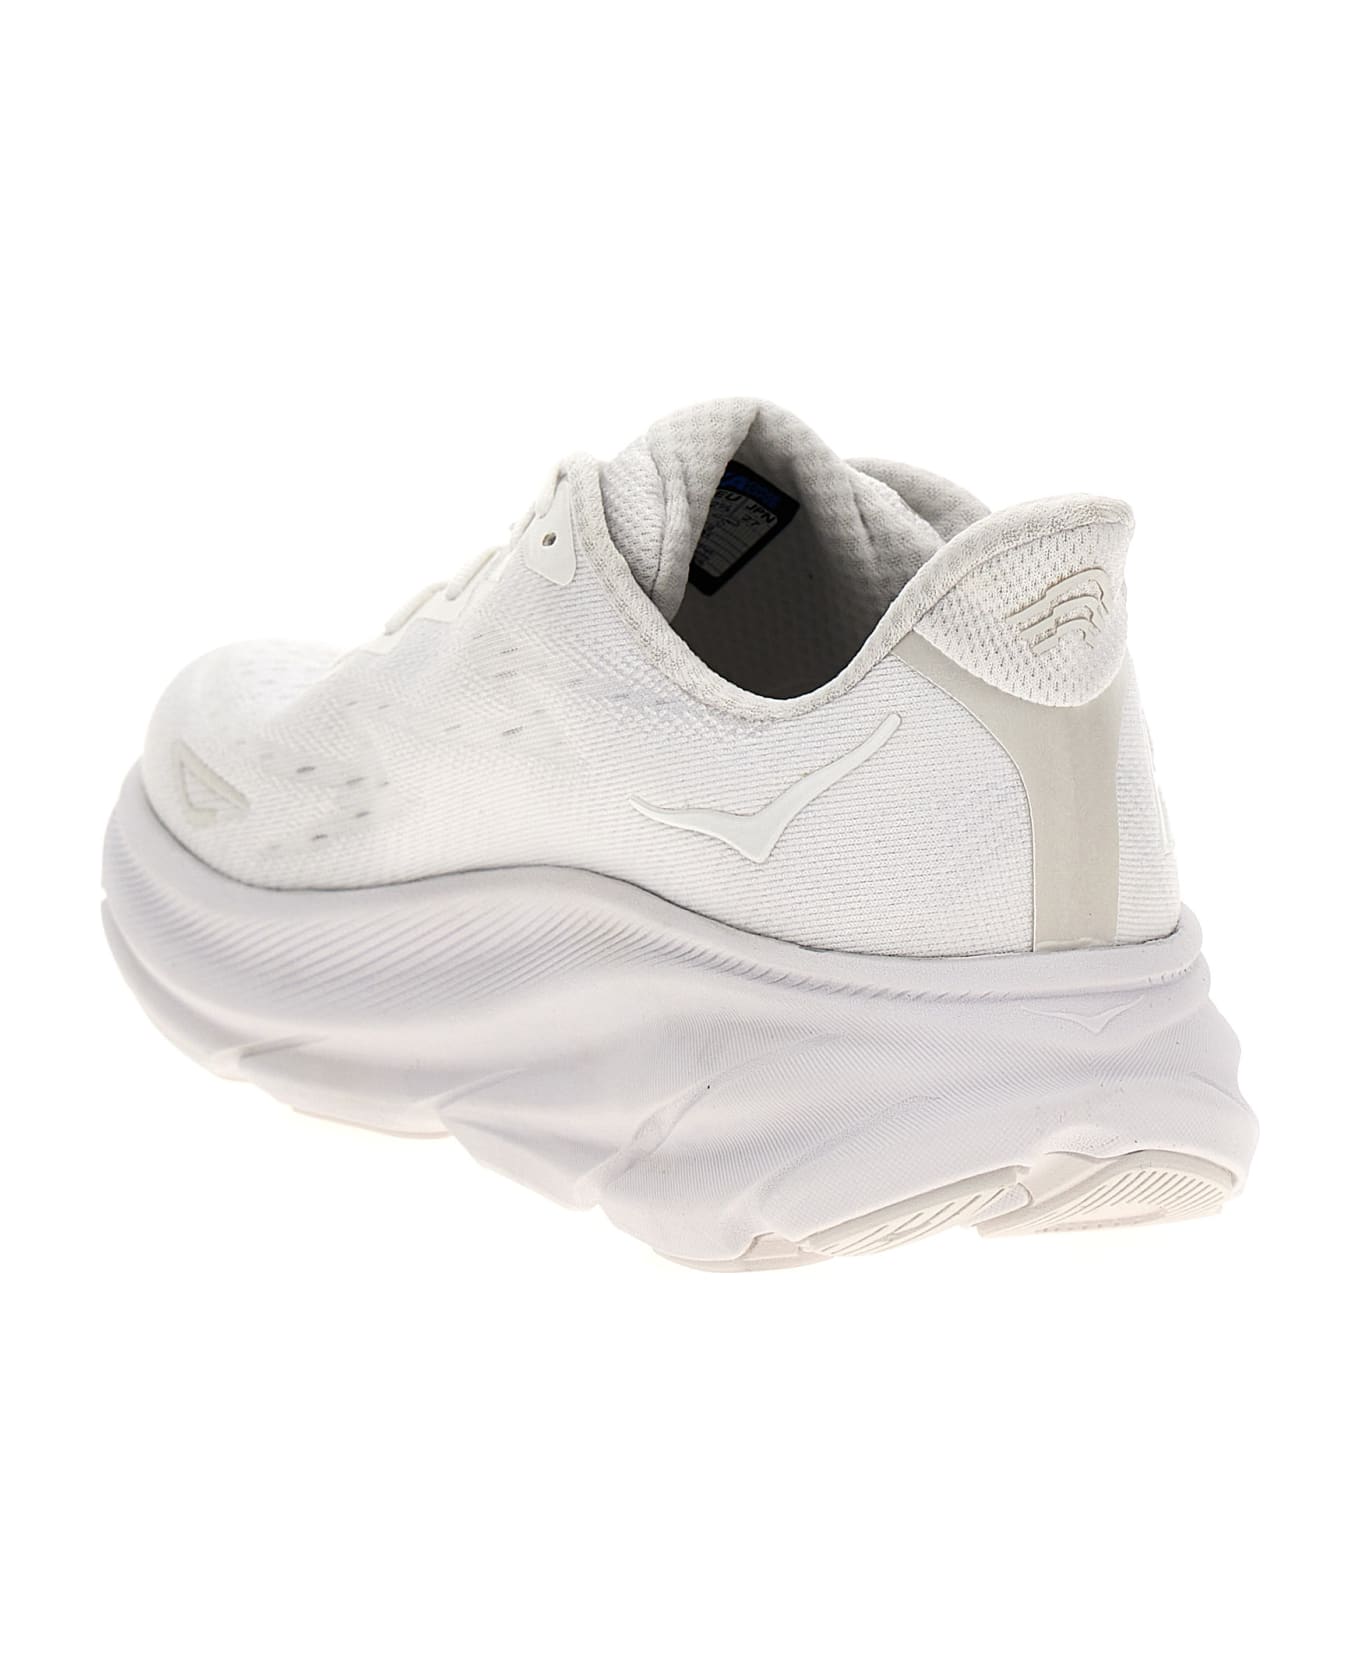 Hoka One One 'clifton 9' Sneakers - White